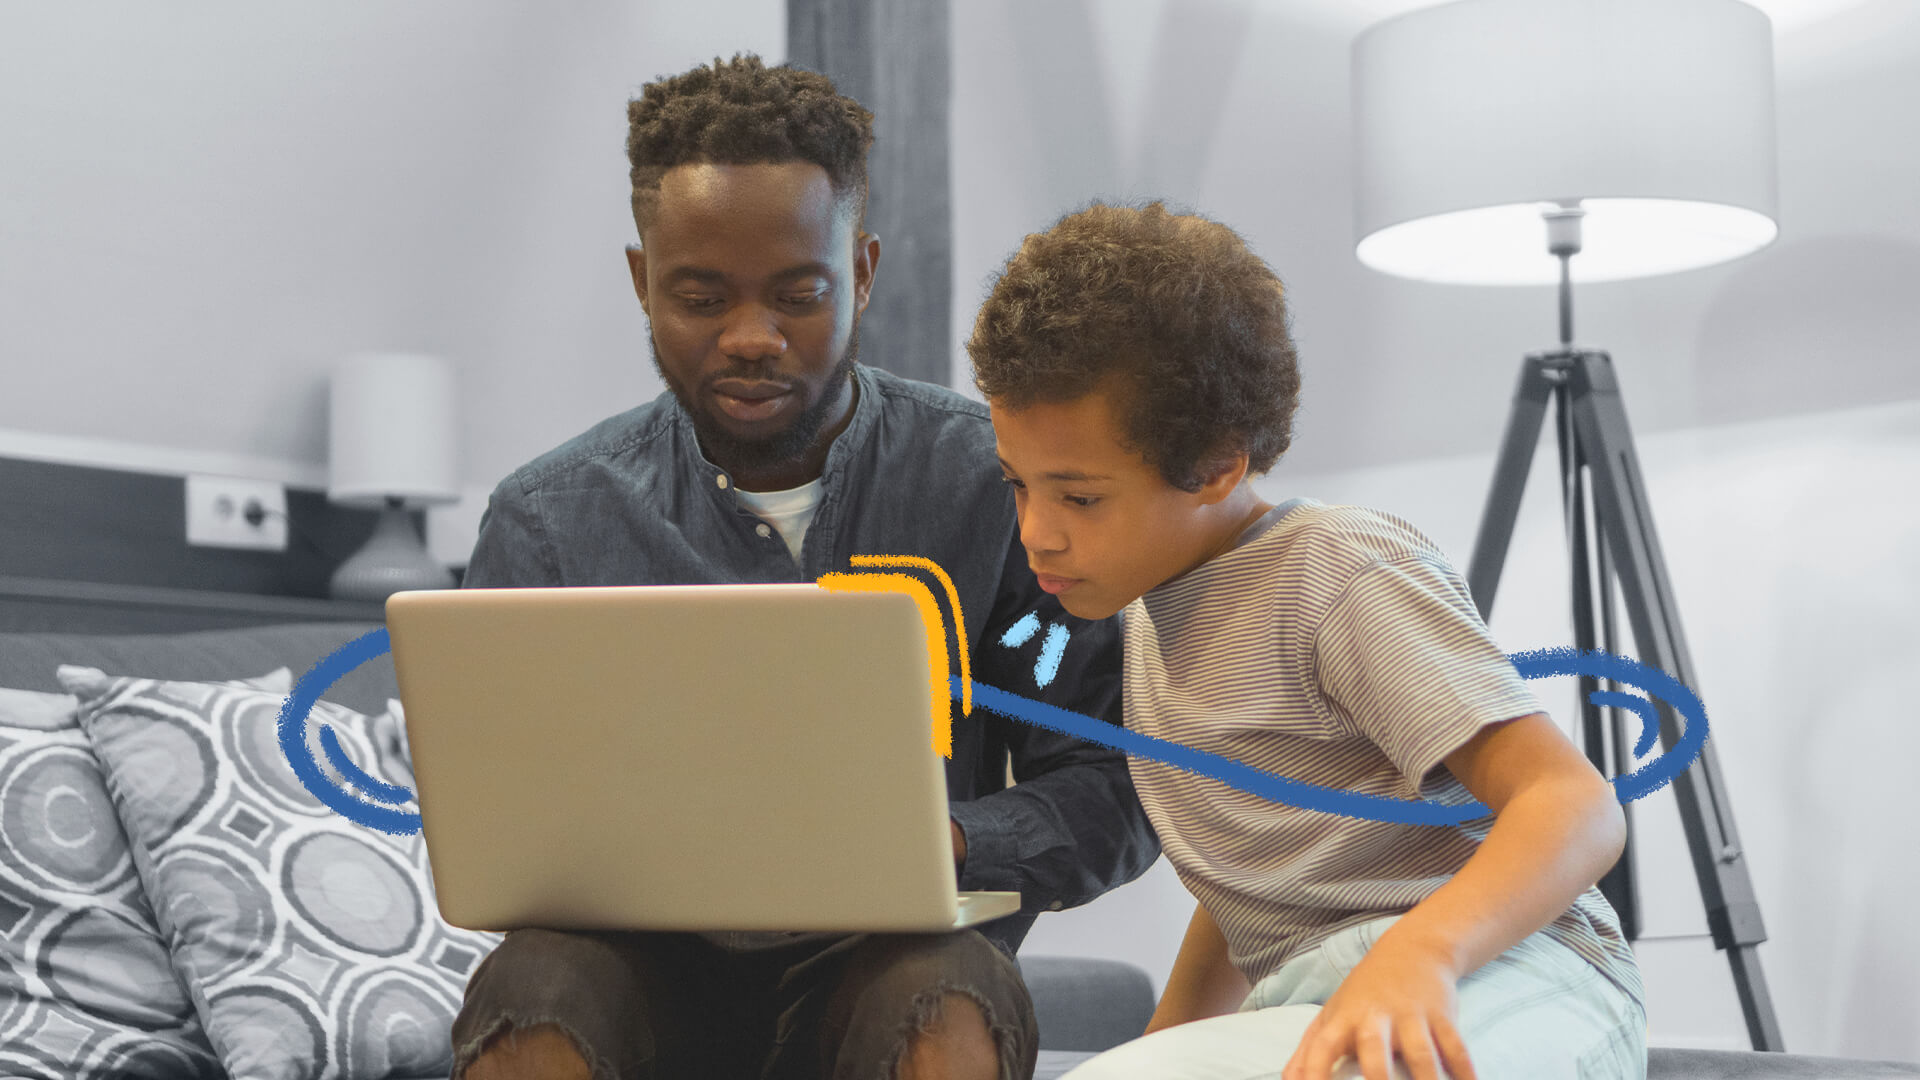 Foto de um adulto e um menino, ambos negros, sentados em frente a um computador